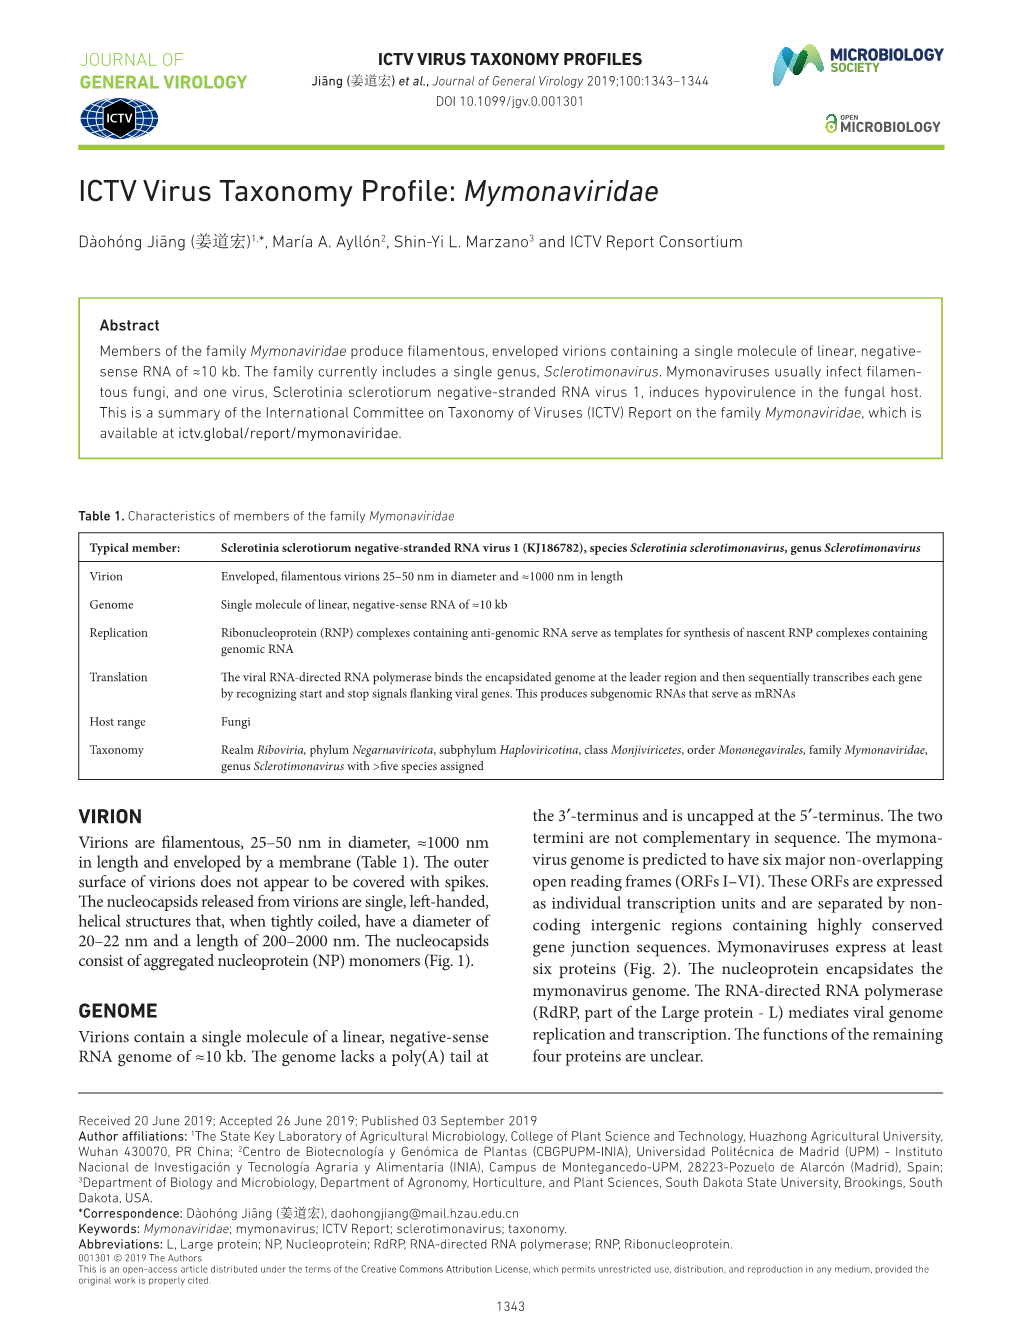 ICTV Virus Taxonomy Profile: Mymonaviridae